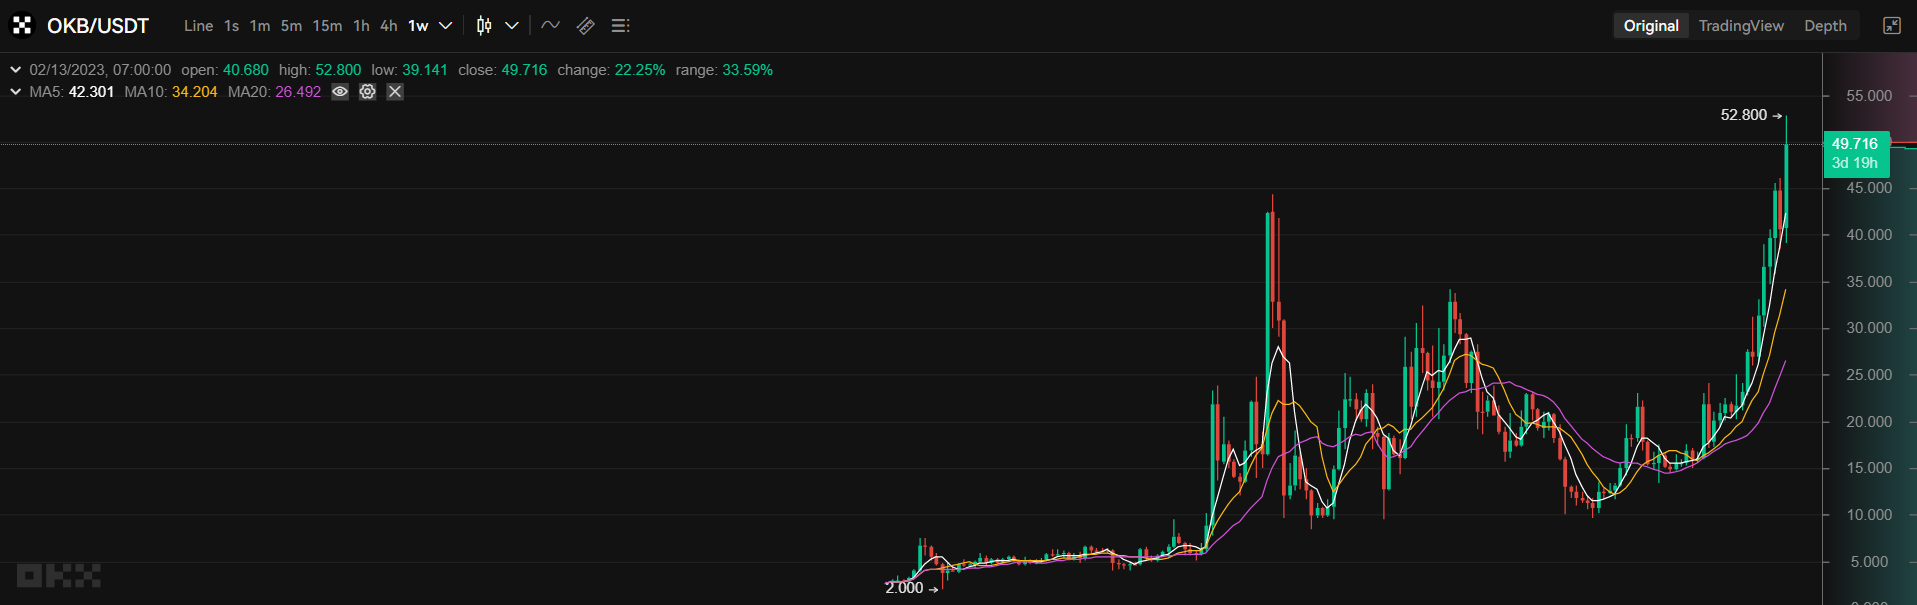 OKB/USDT price 1W chart.  Source: OKX